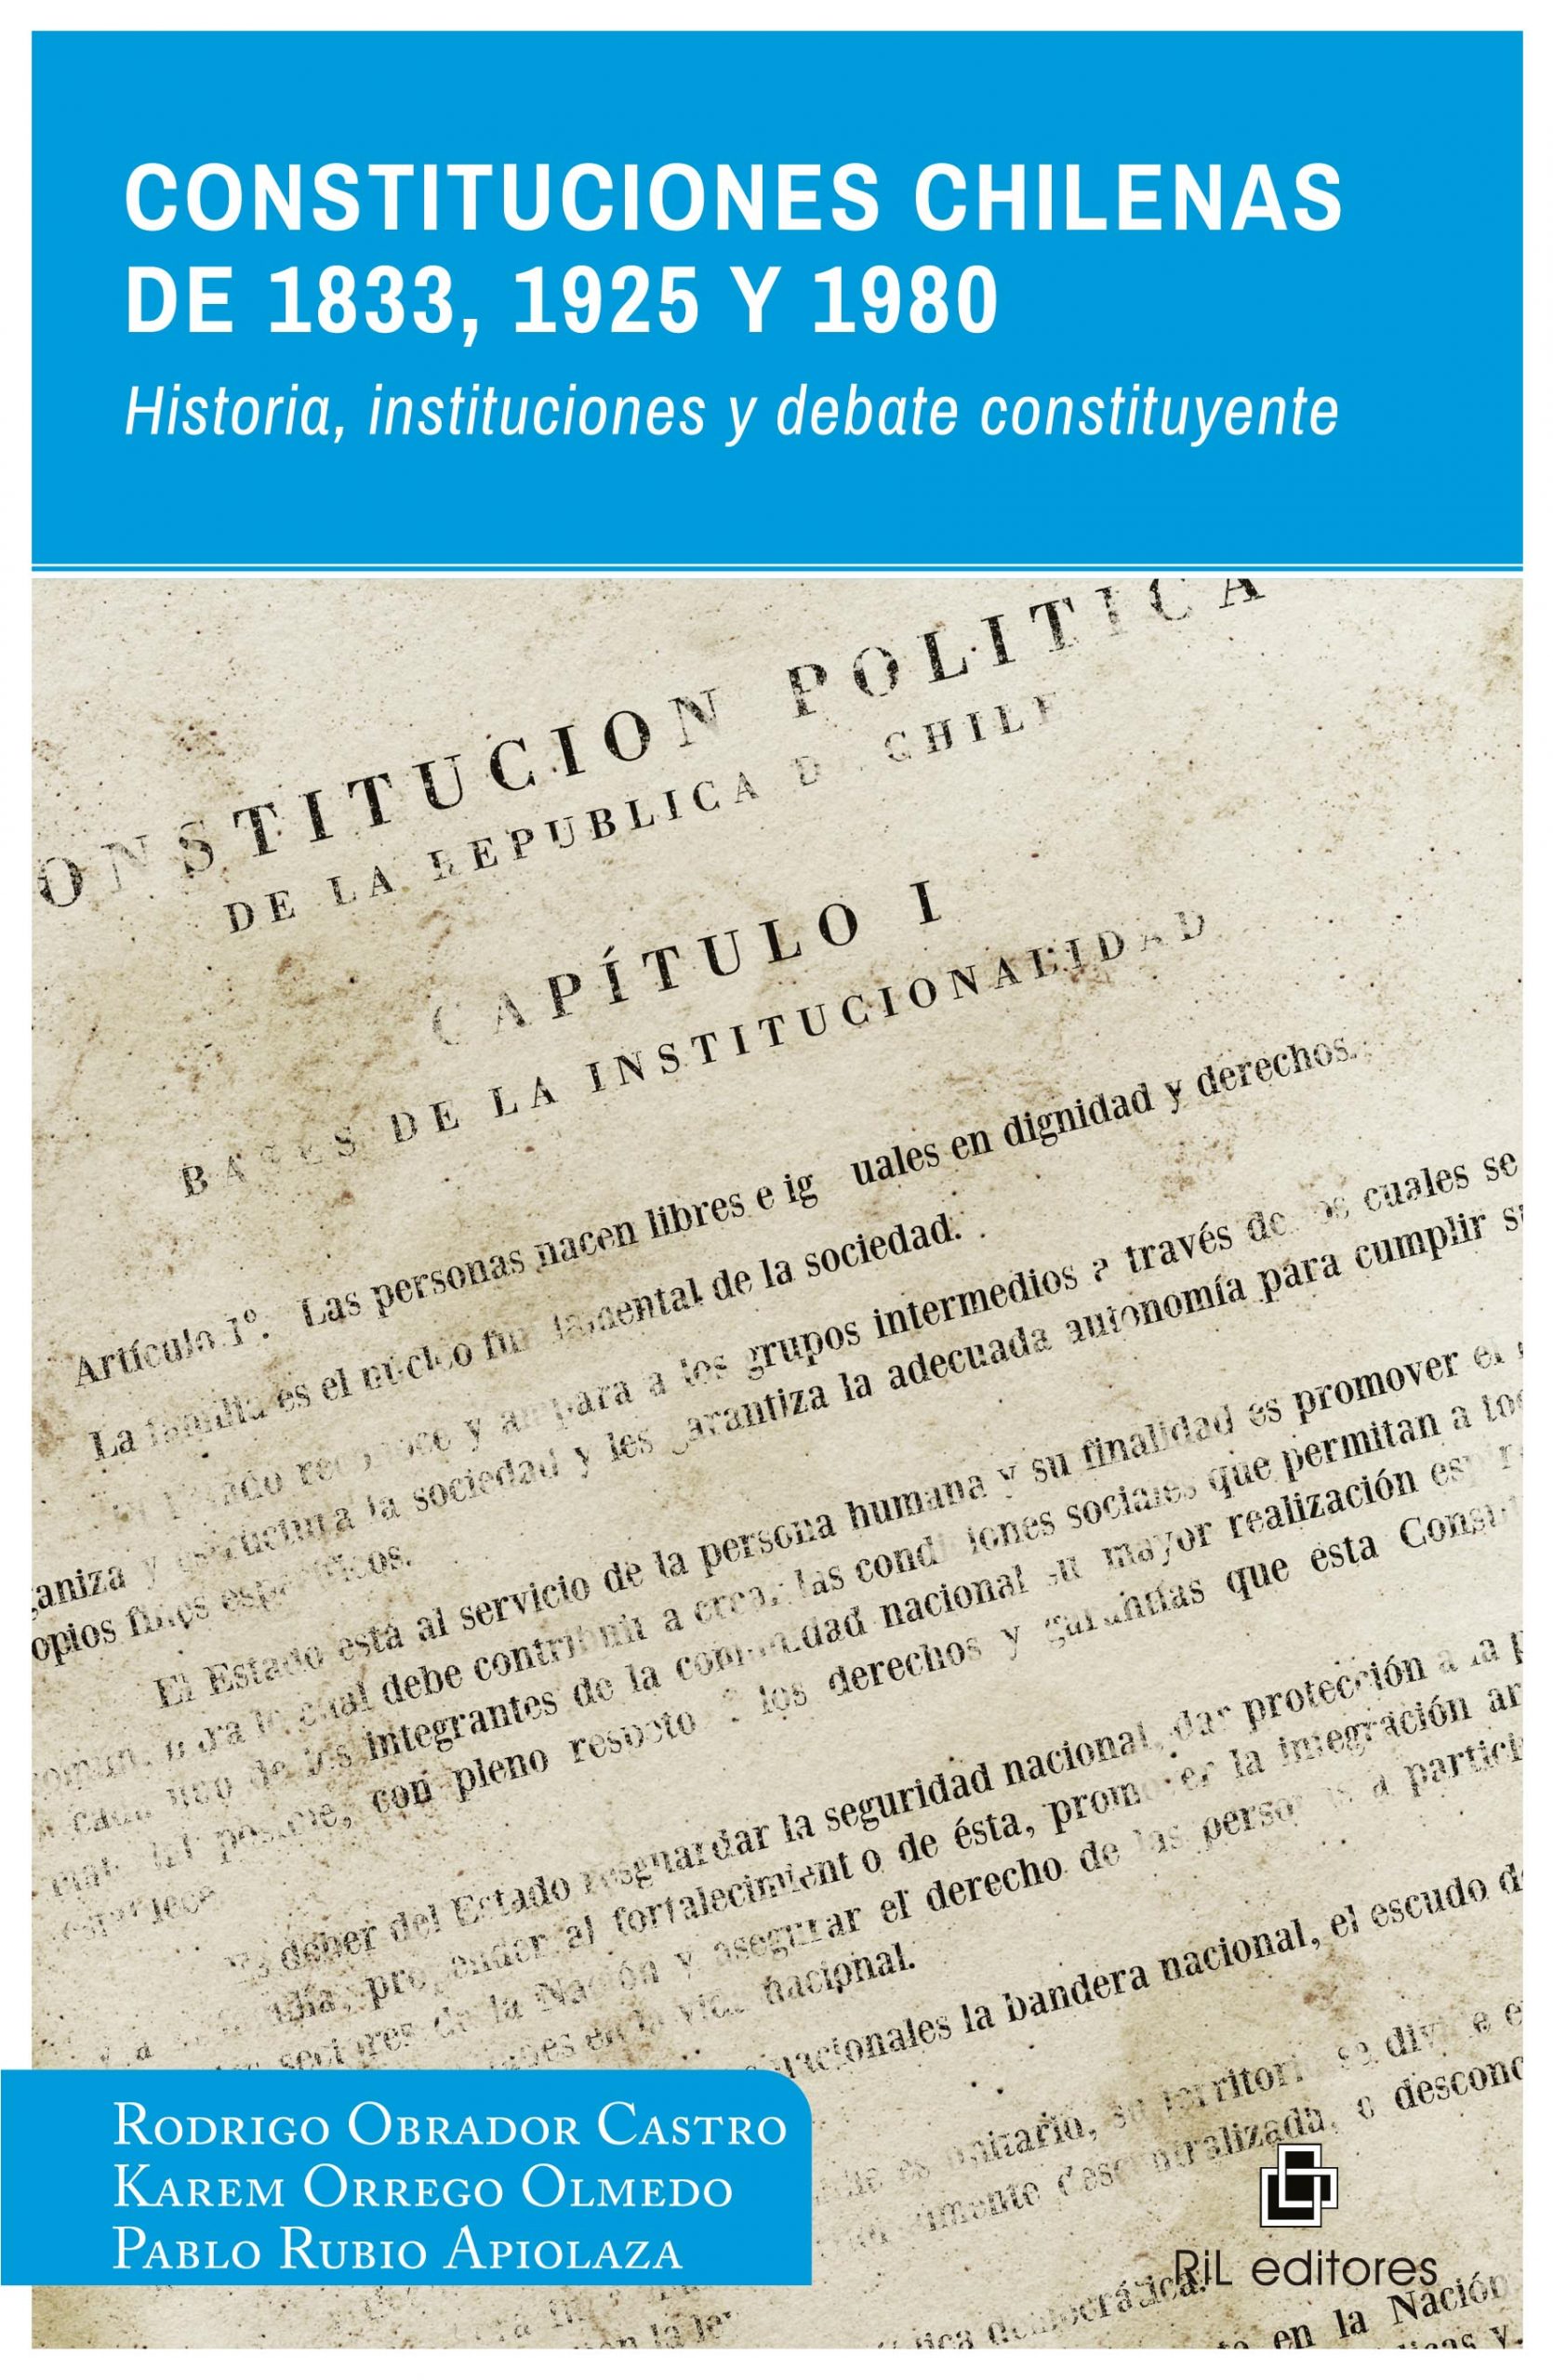 Constituciones chilenas de 1833, 1925 y 1980. Historia, instituciones y debate constituyente 1